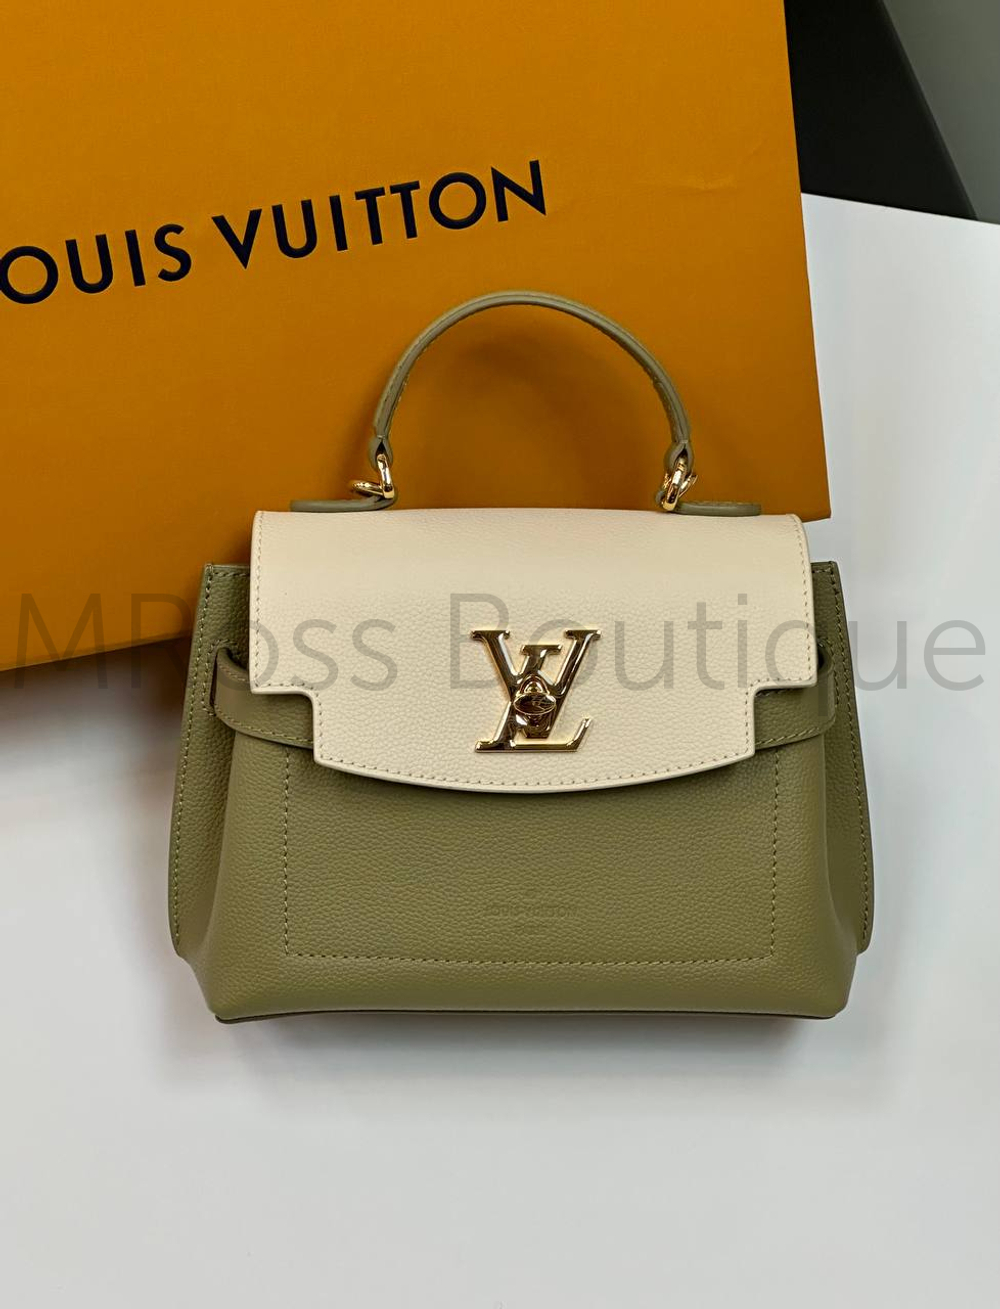 Сумка хаки Lockme Ever Mini Louis Vuitton с бежевым клапаном